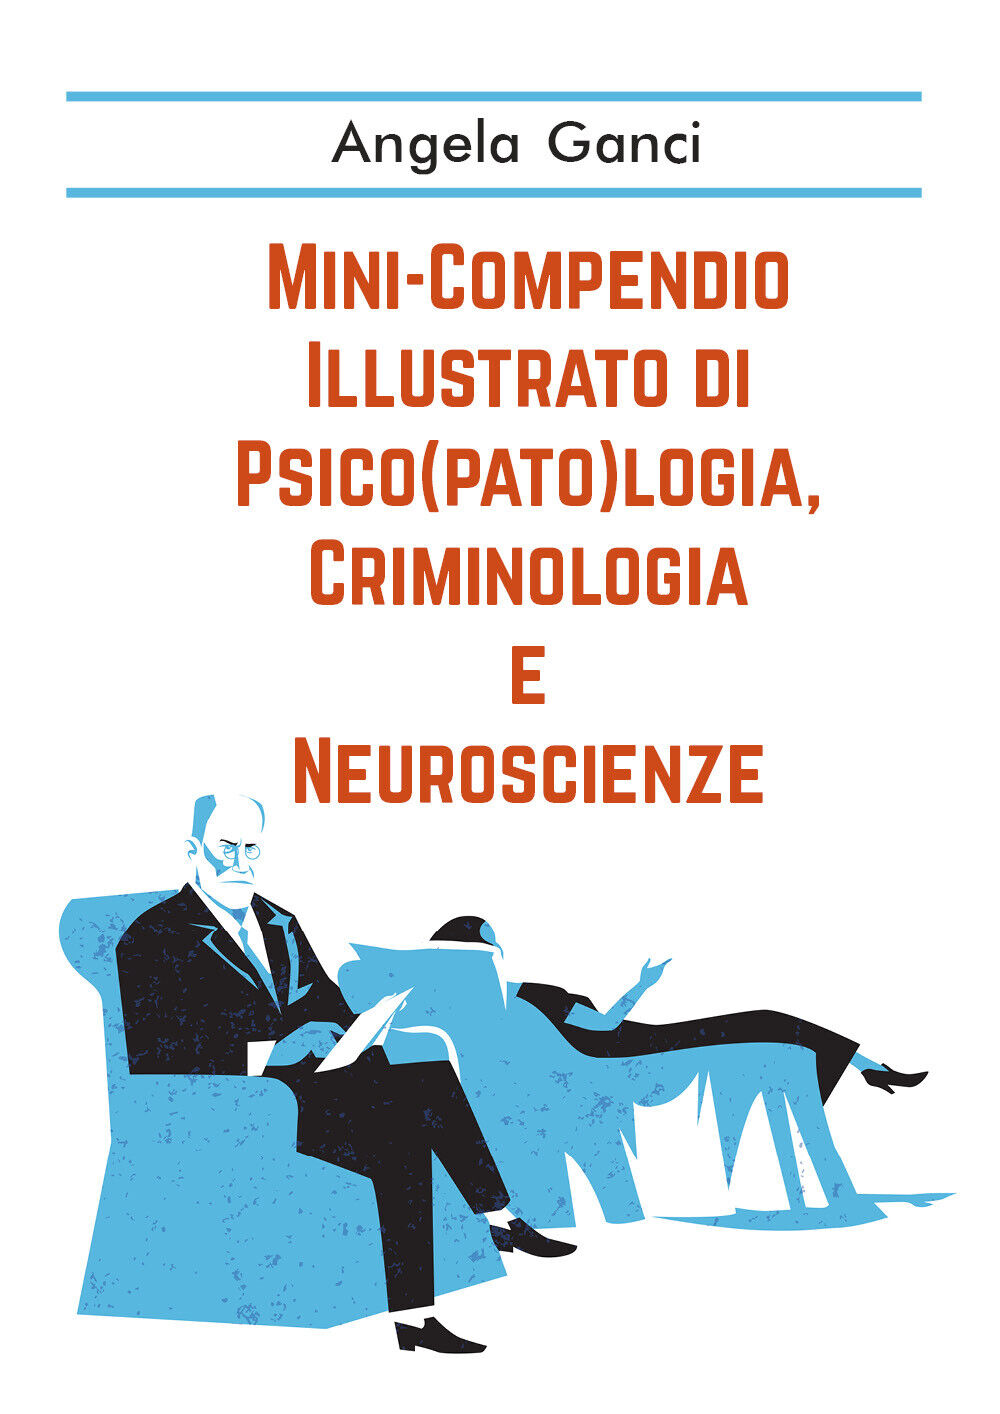 Mini-compendio illustrato di psico(pato)logia, criminologia e neuroscienze di An